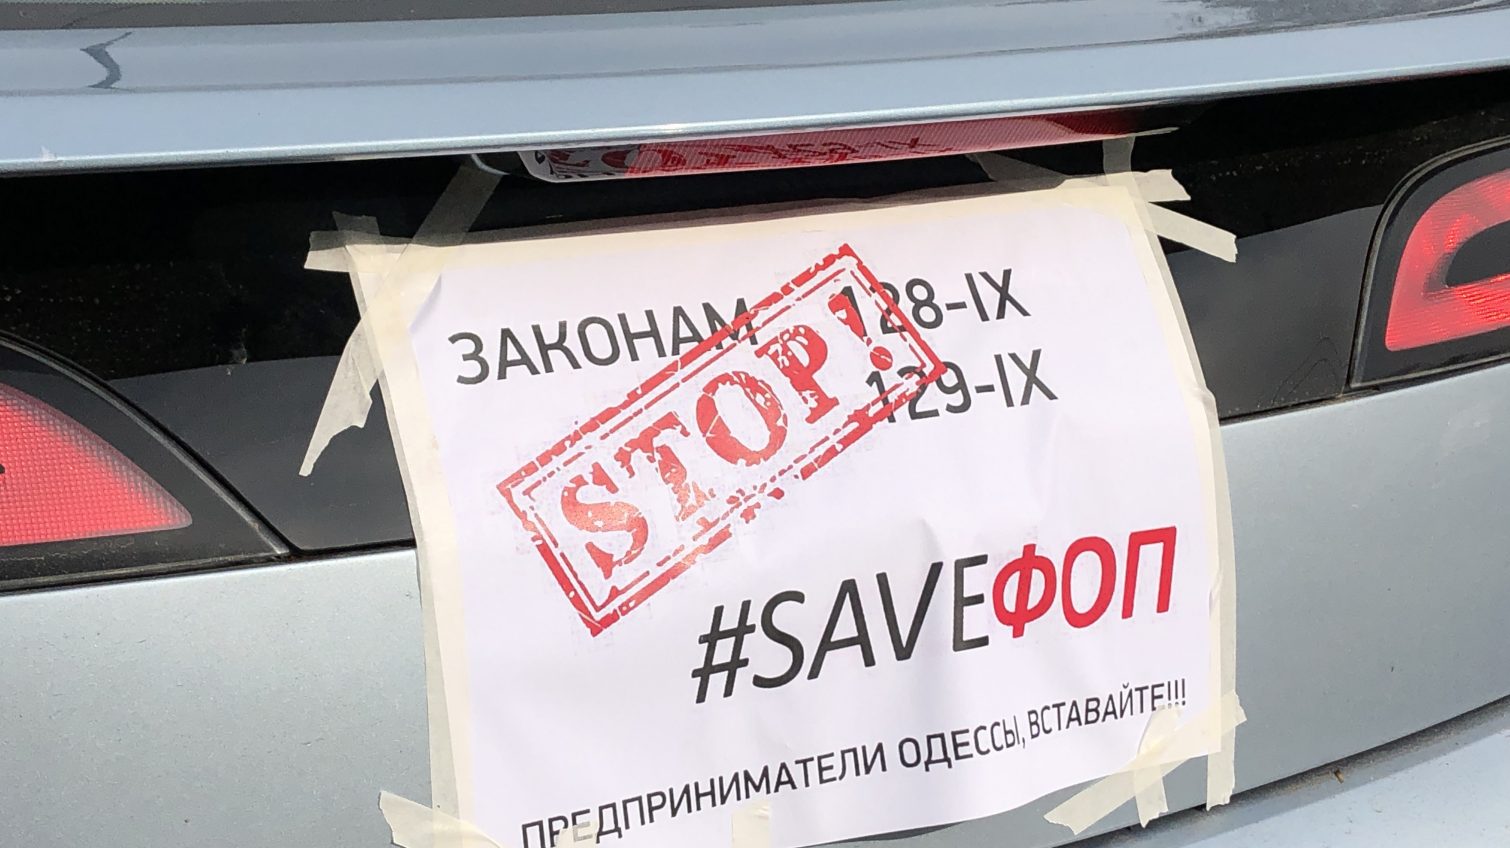 В Одессе предпринимали устроили автопробег и требуют отменить два закона (фото) «фото»